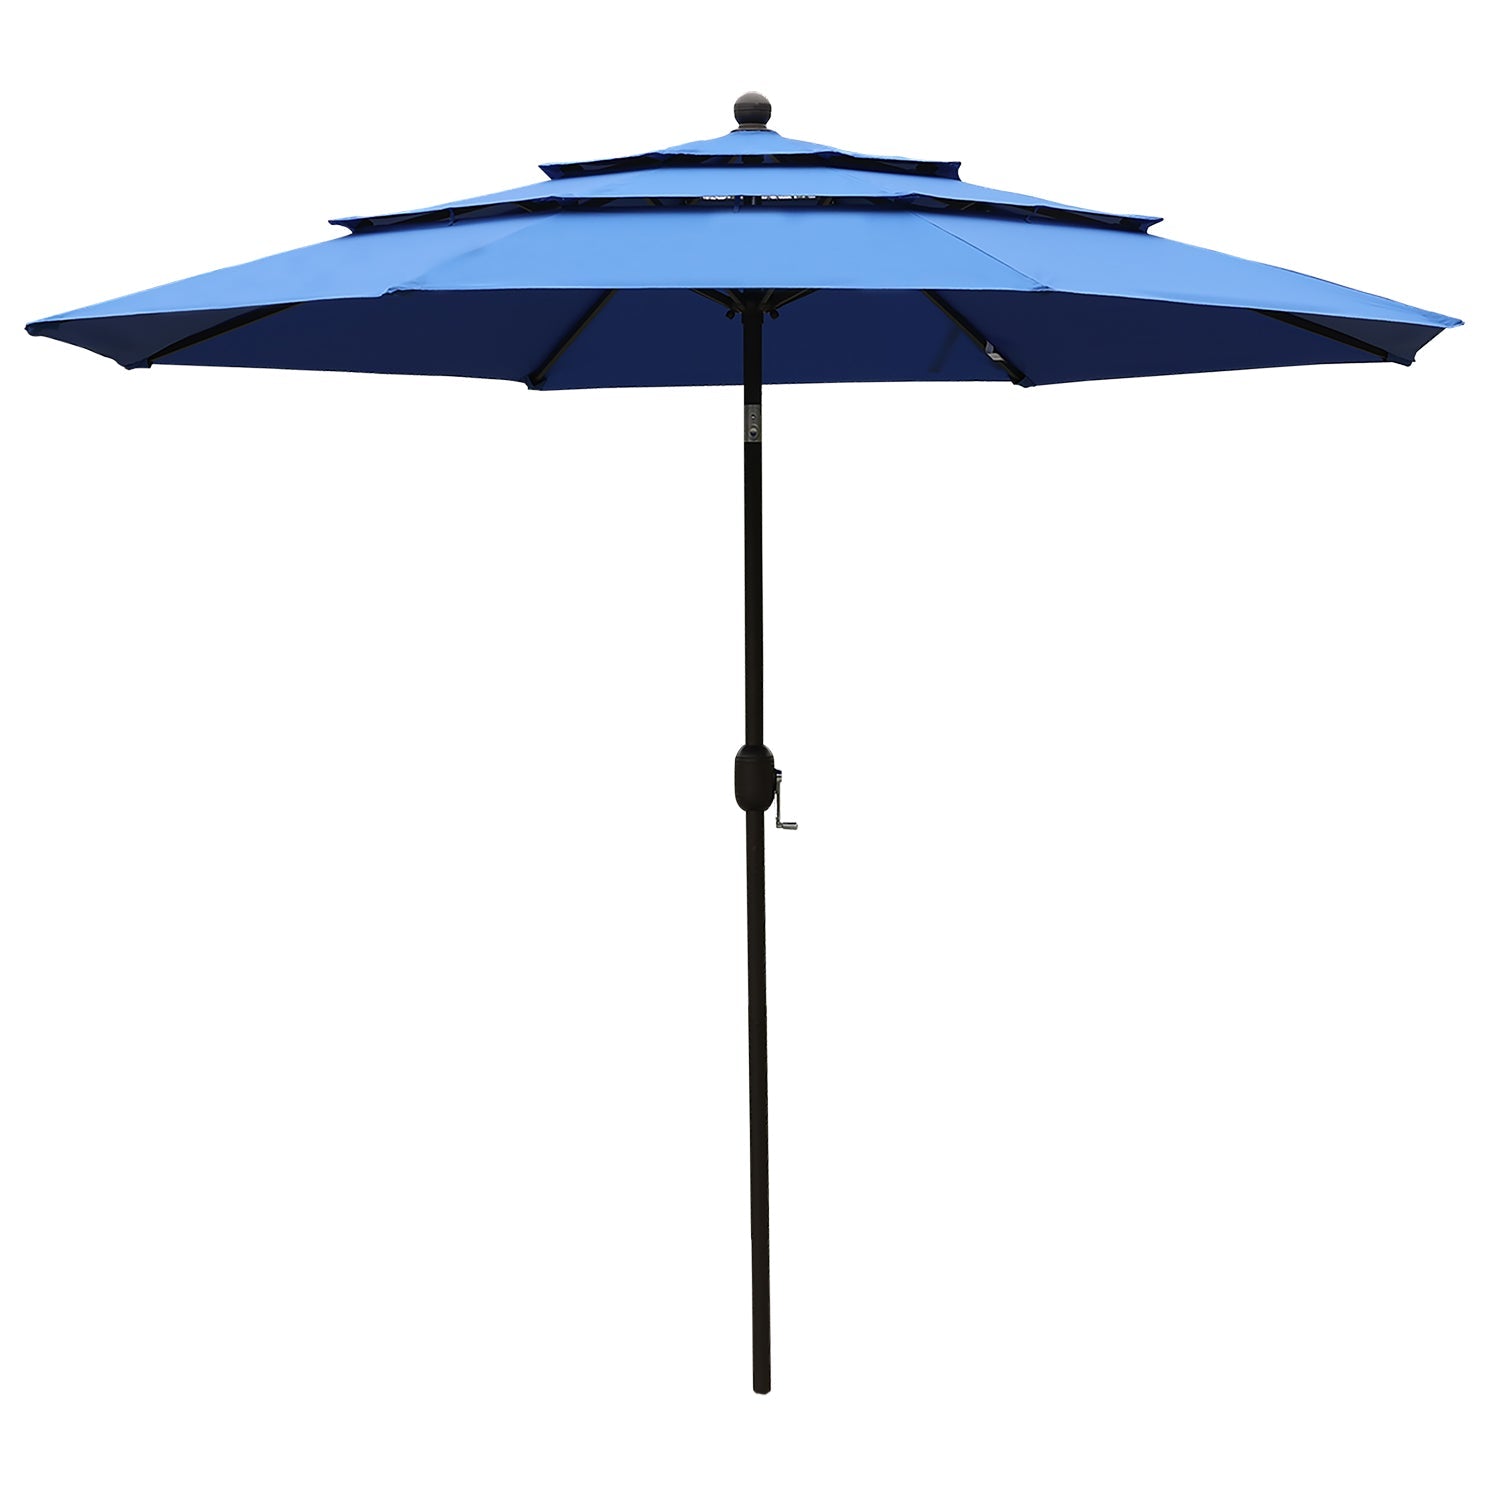 3 Tier 10ft. Patio Umbrella - Market Umbrella with Crank (No Base) Patio Umbrella Aoodor Royal Blue  